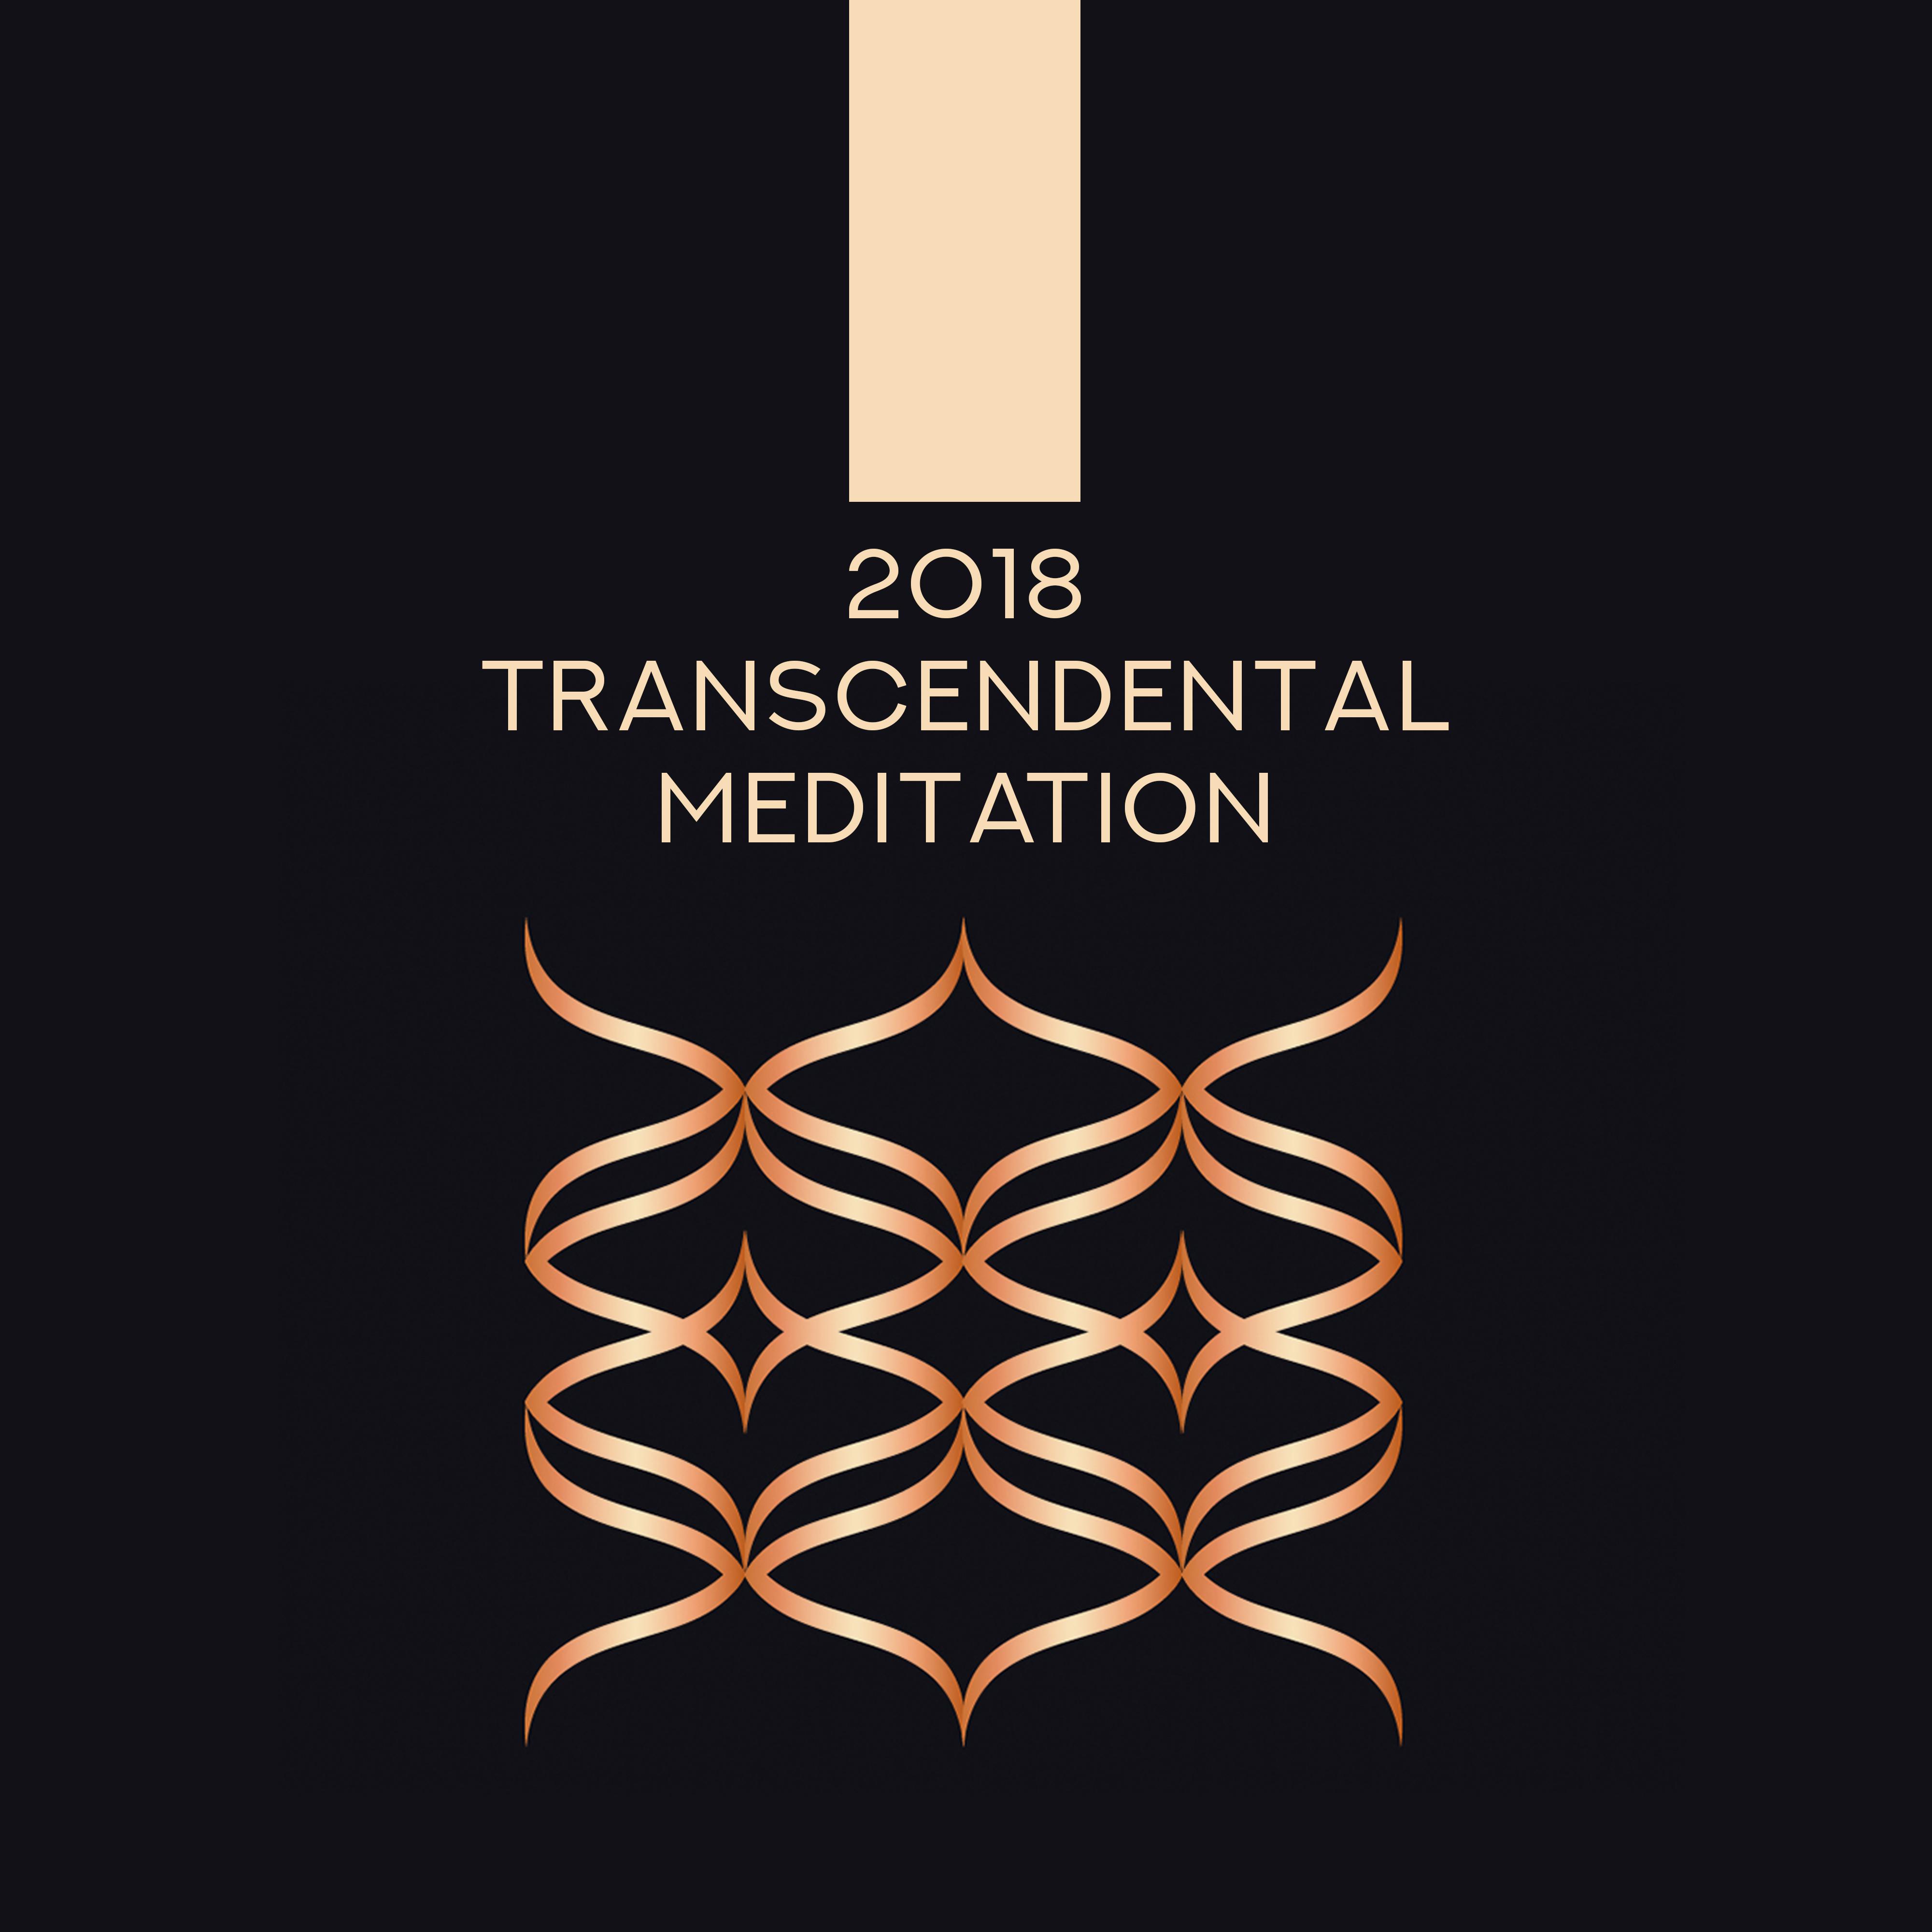 2018: Transcendental Meditation